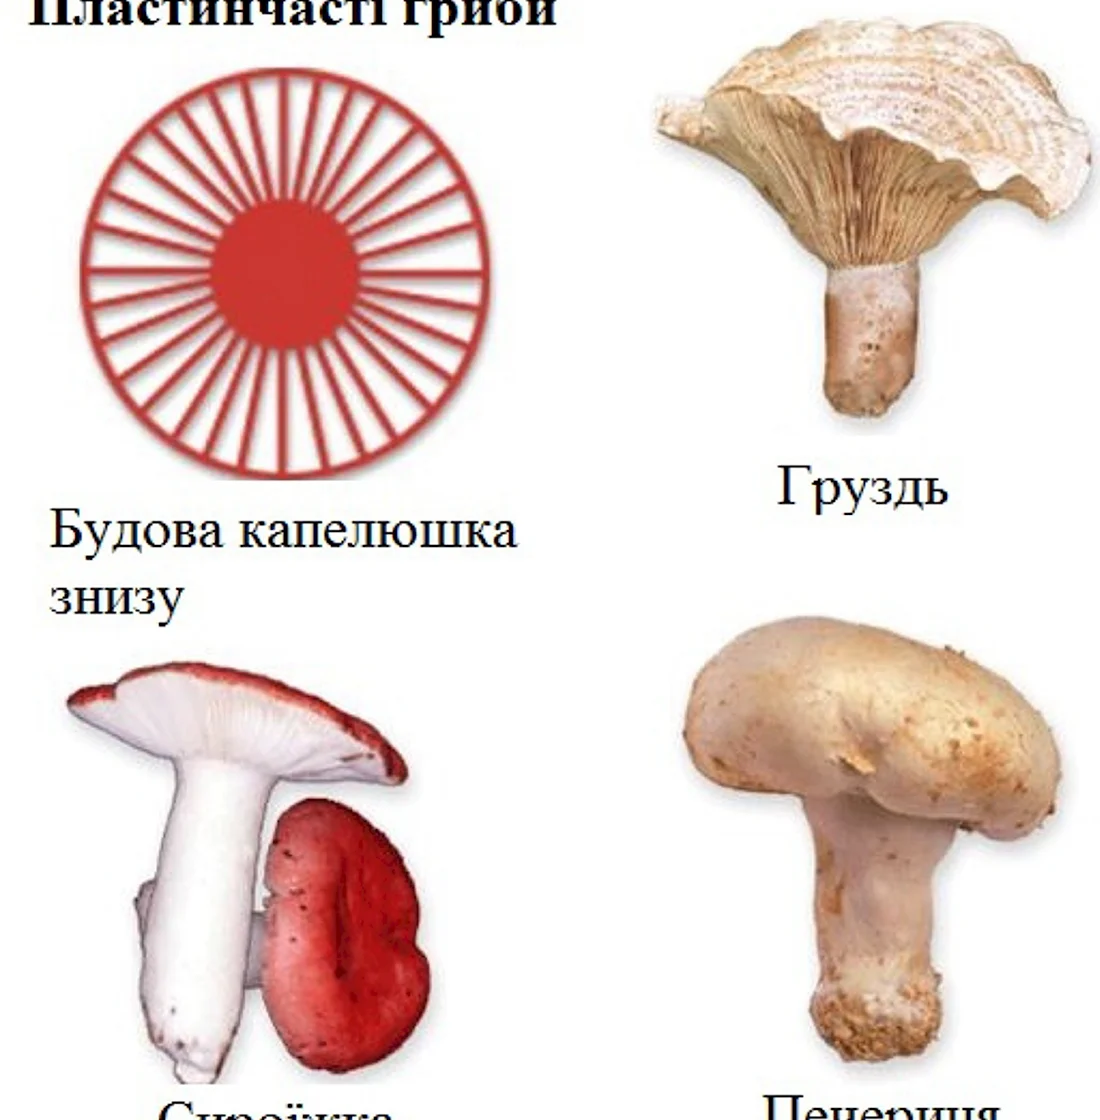 Шляпочные грибы трубчатые и пластинчатые